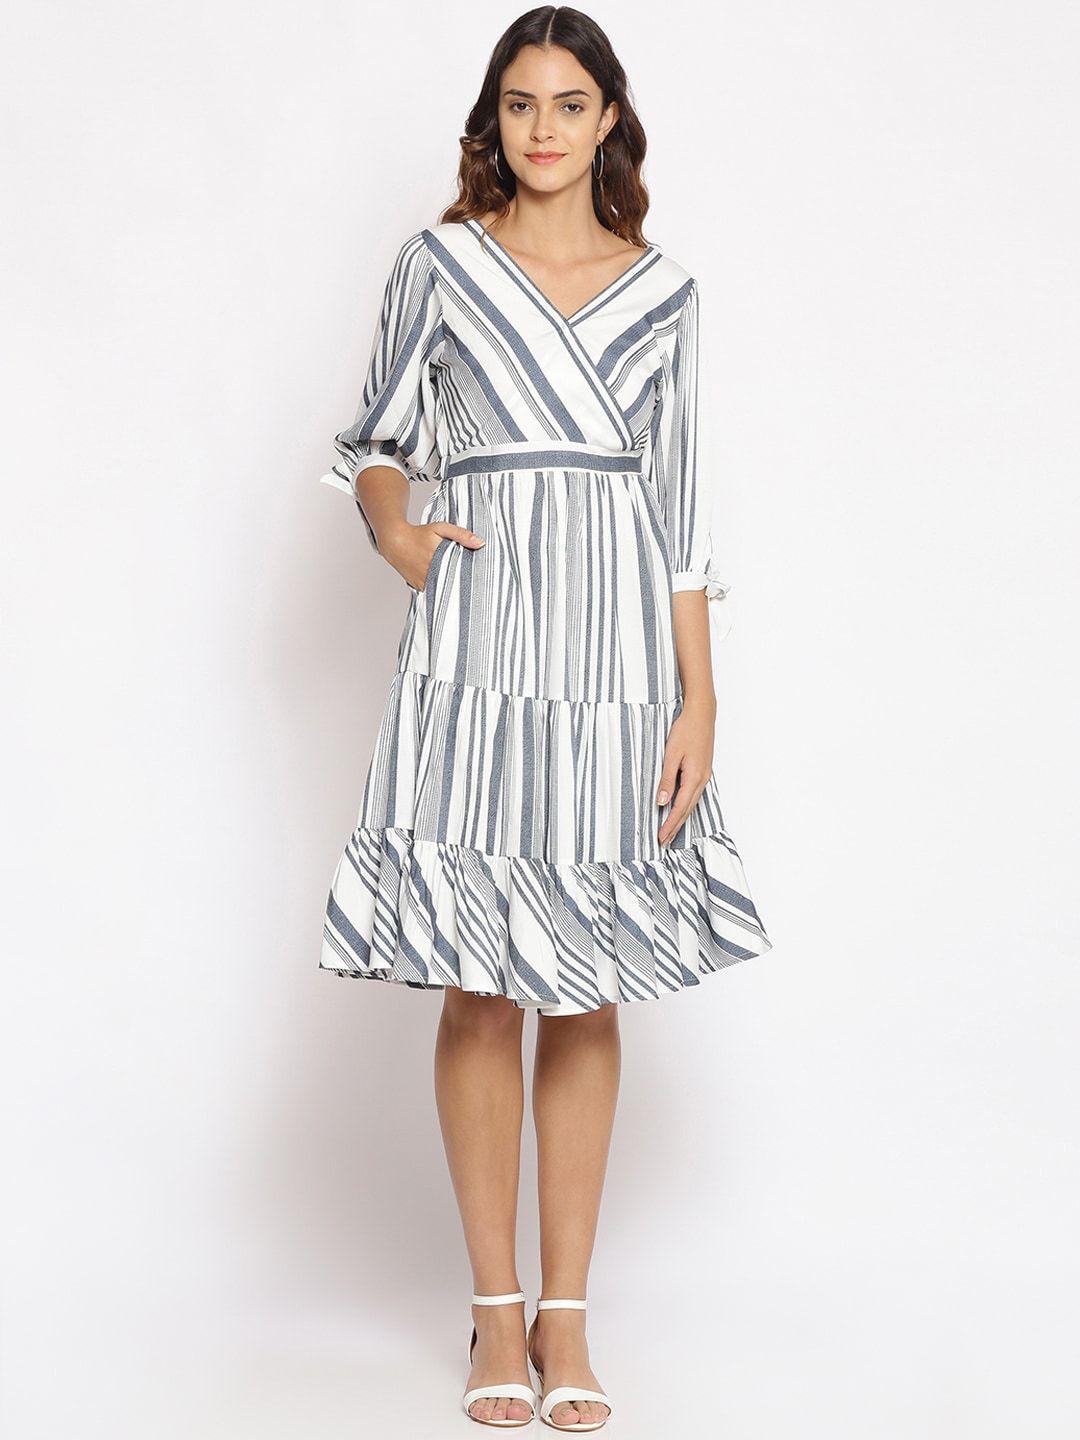 oxolloxo white & grey striped satin dress